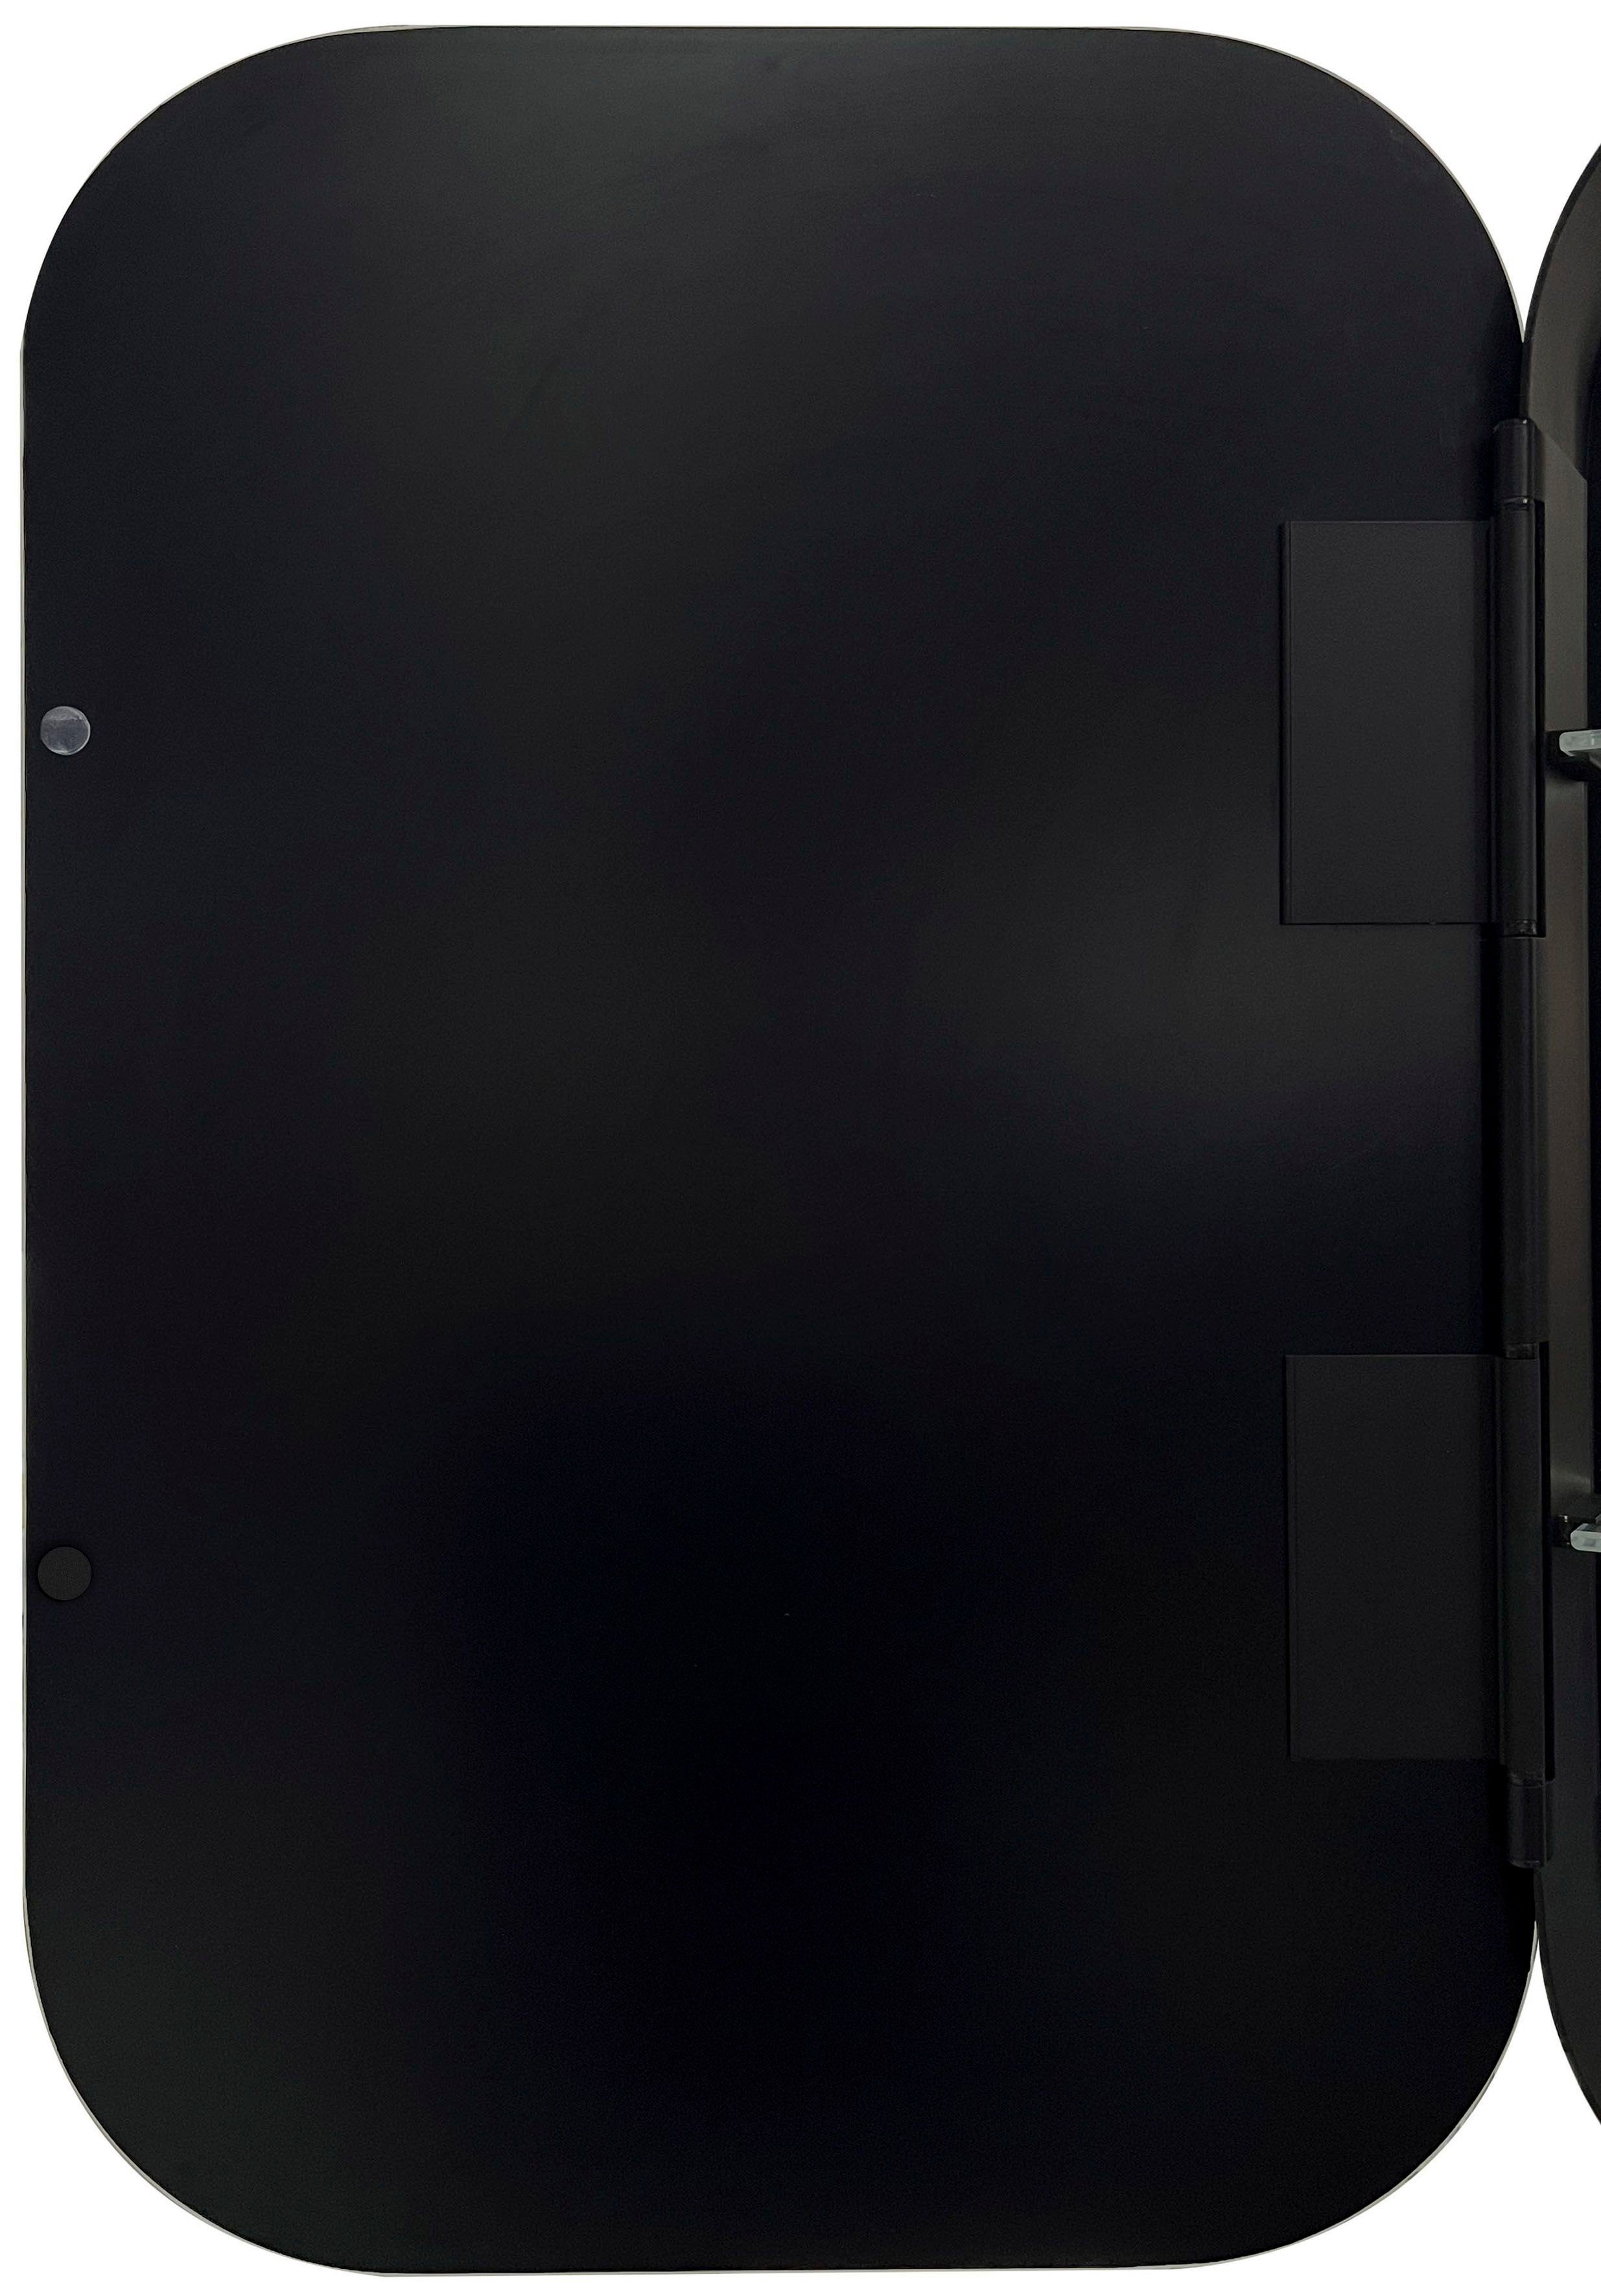 Talos Echtglas, cm, aus und 40x60 Badezimmerspiegelschrank BxH: oval, schwarz IP24, Alumunium